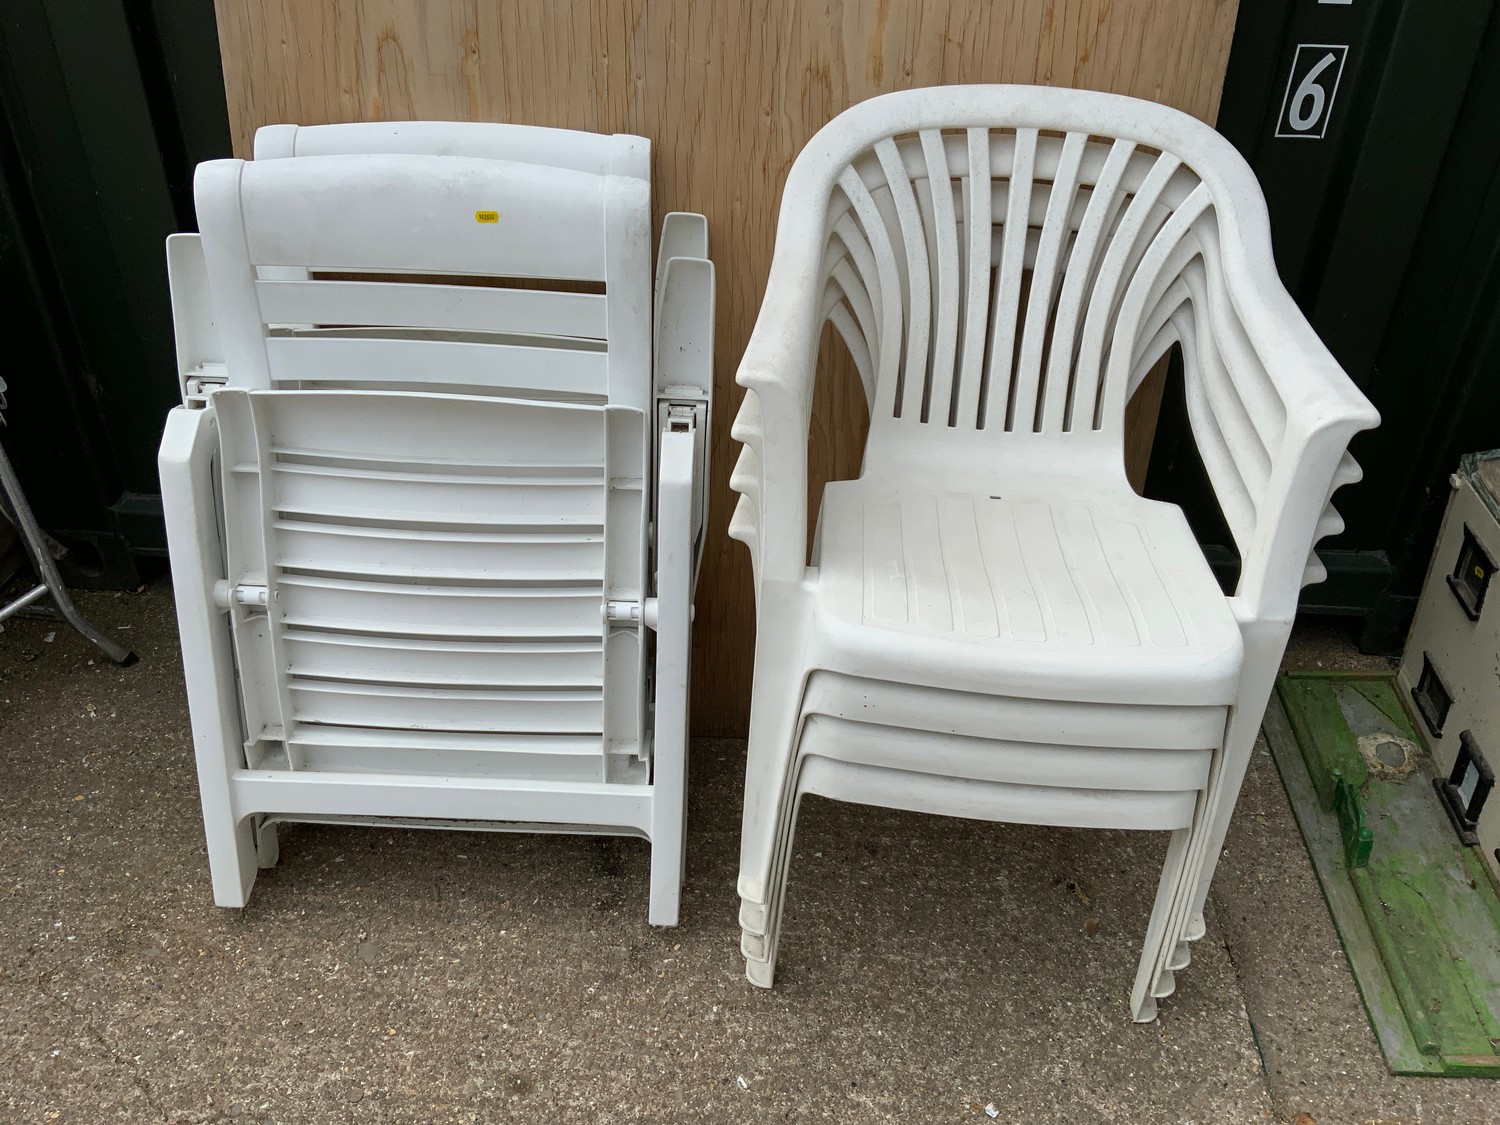 White Plastic Garden Chairs